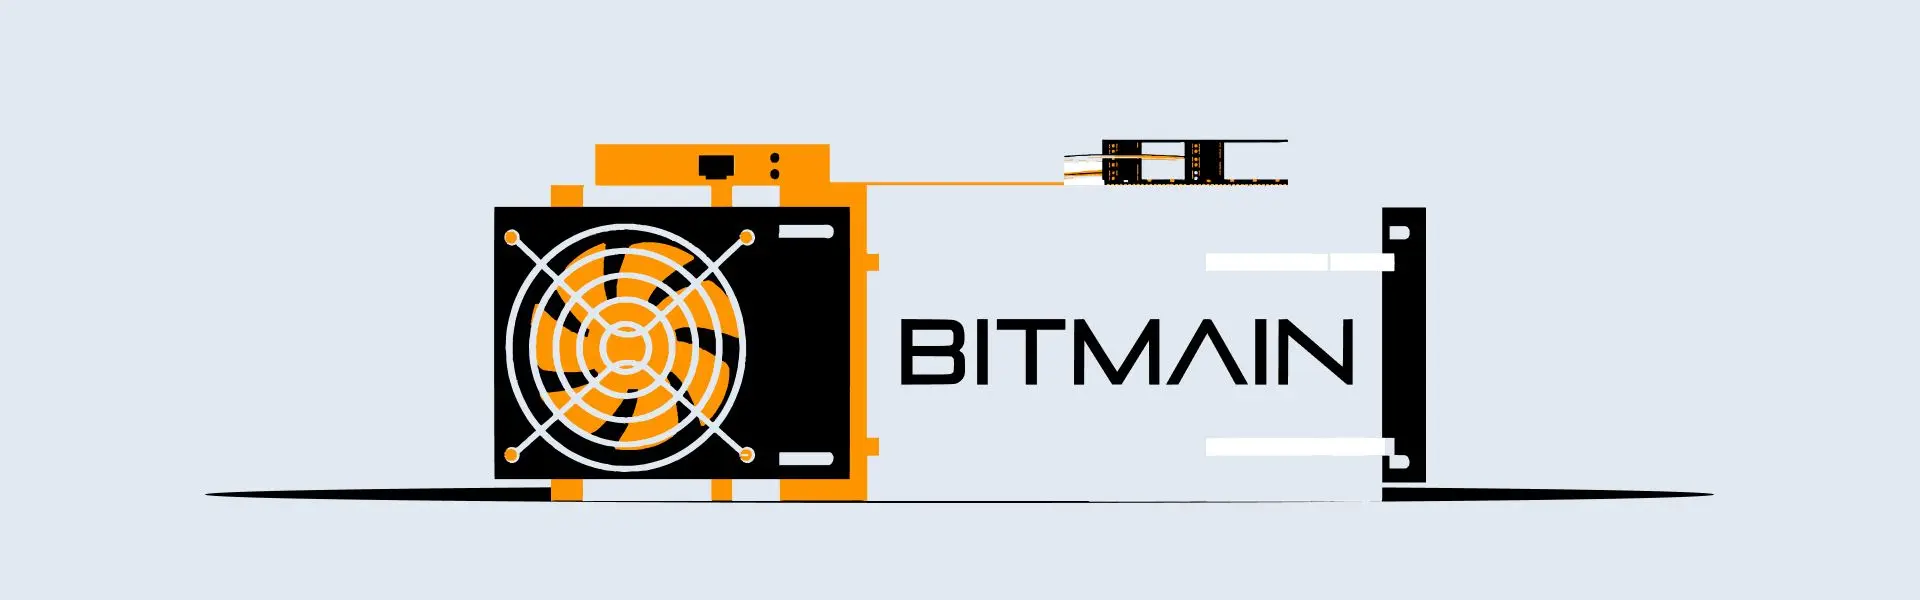 Компанія Bitmain оголосила про випуск нового ASIC-майнера.